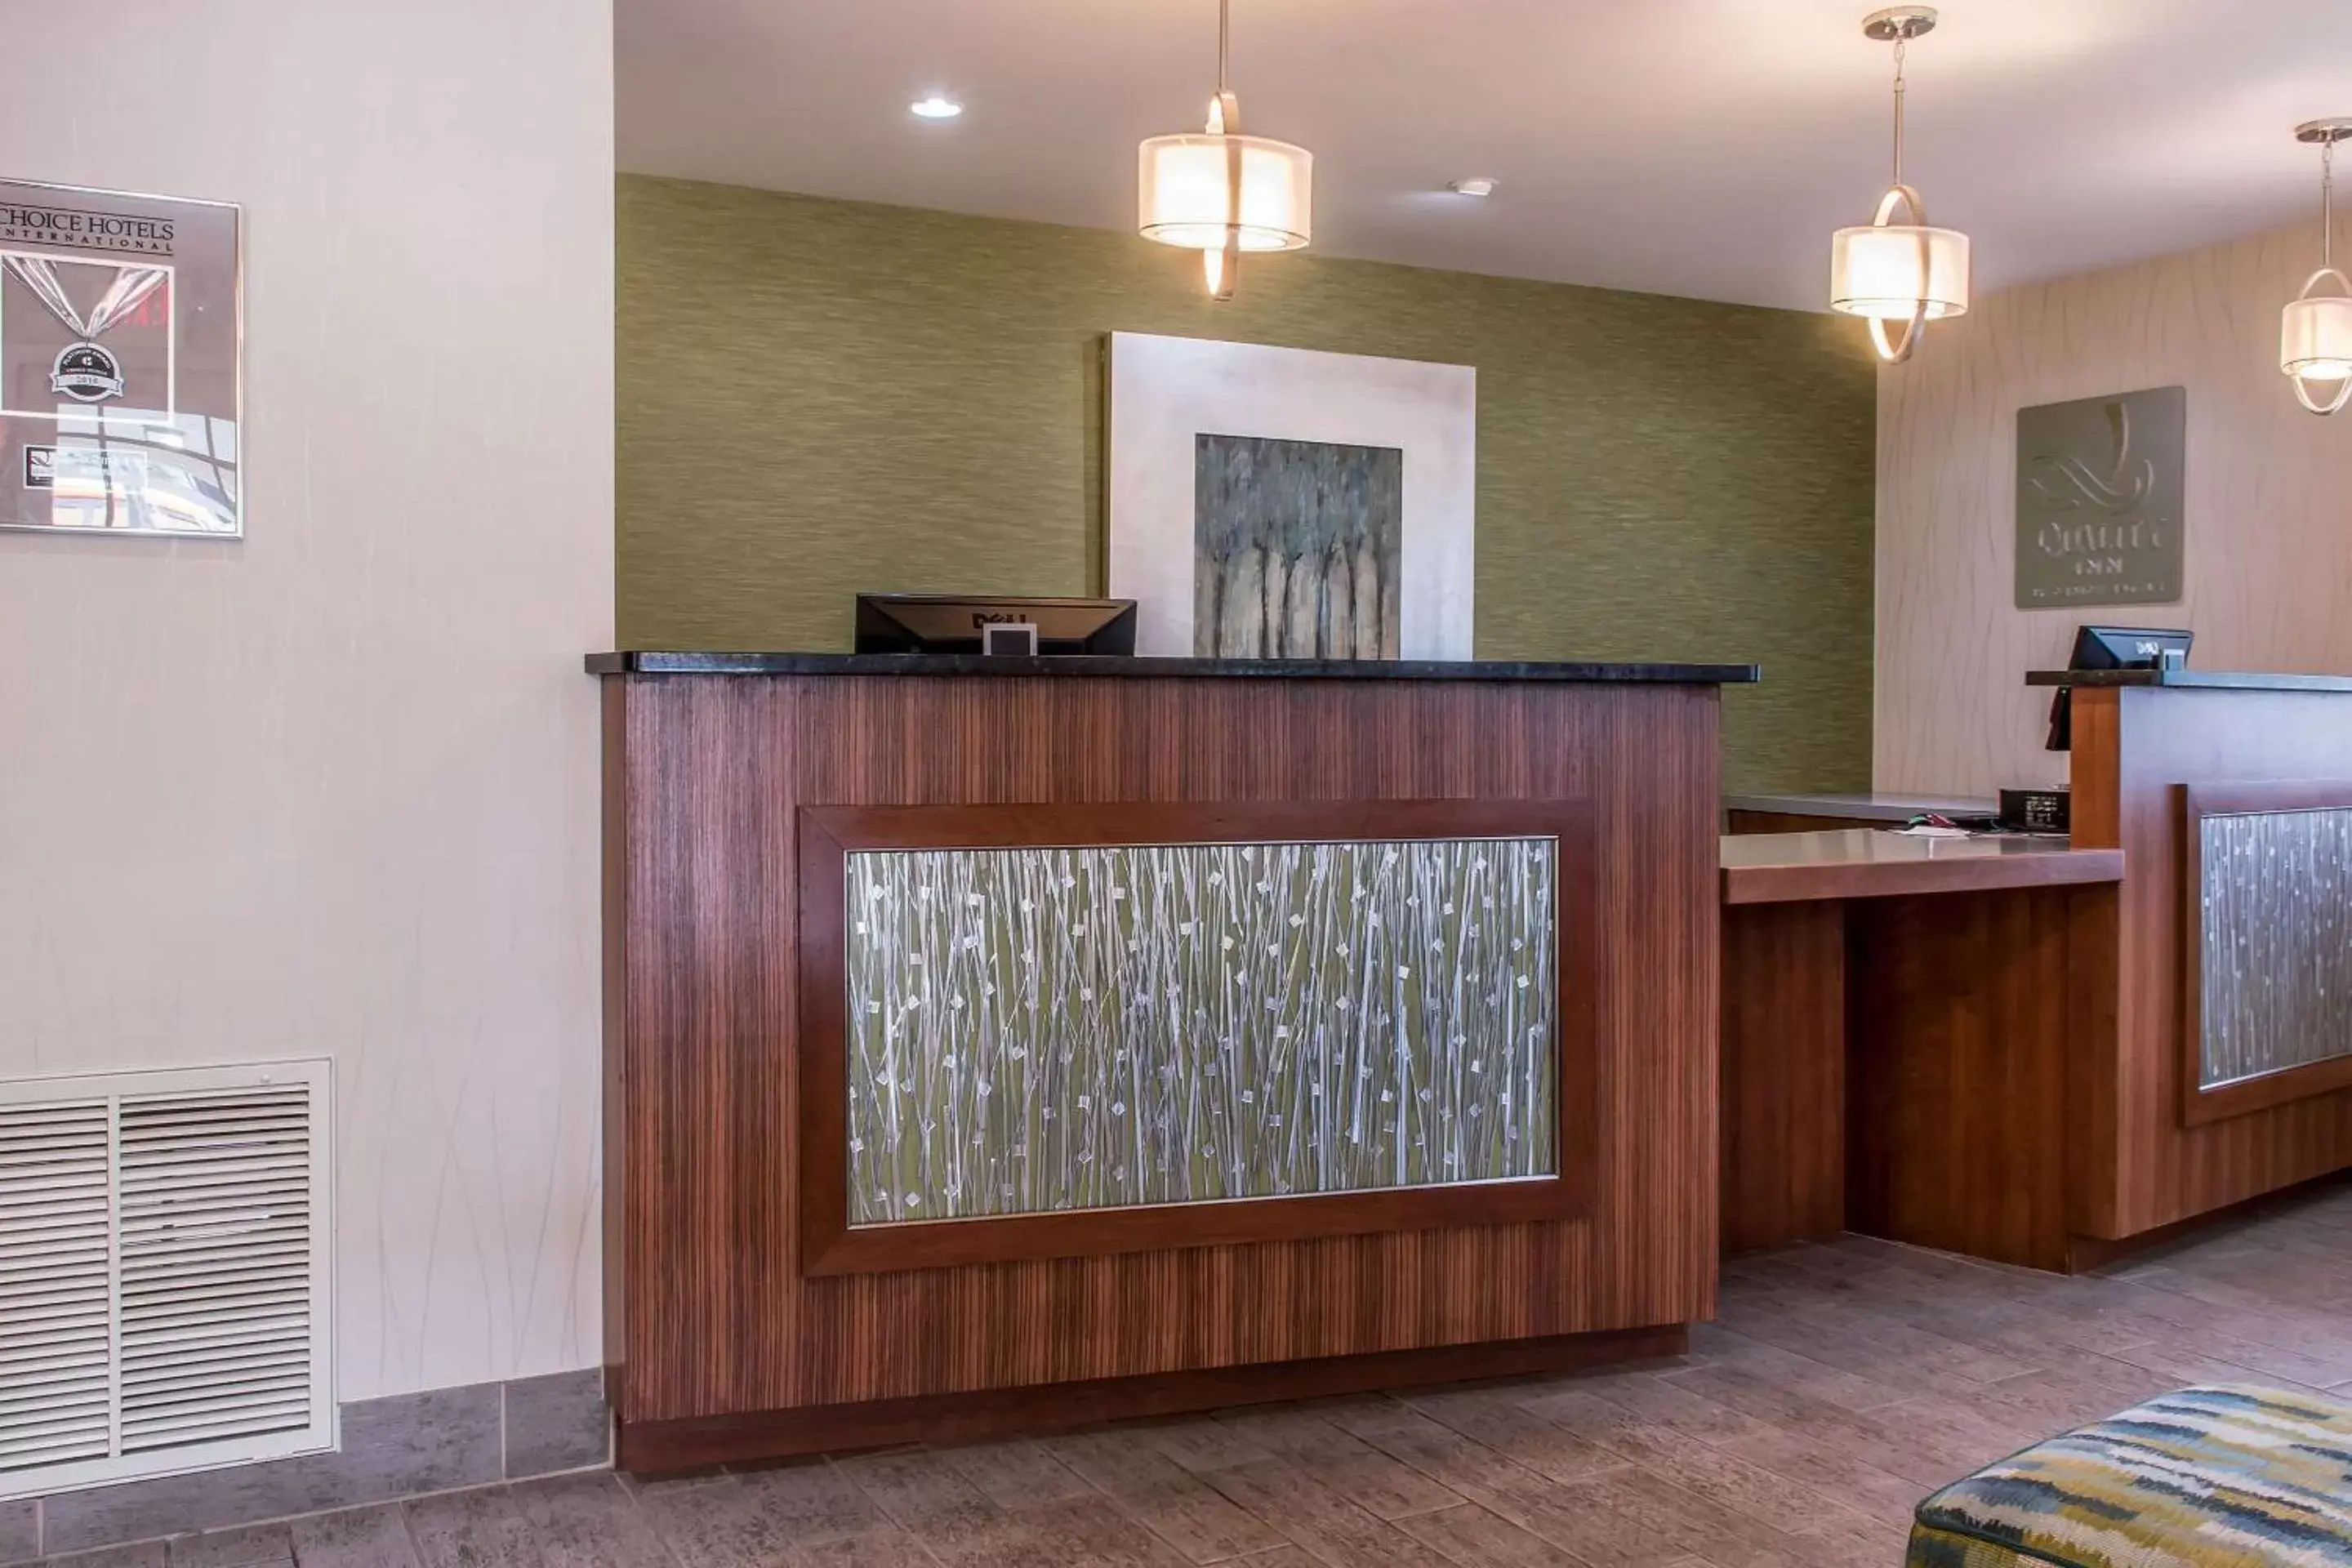 Lobby or reception, Lobby/Reception in Quality Inn Bedford